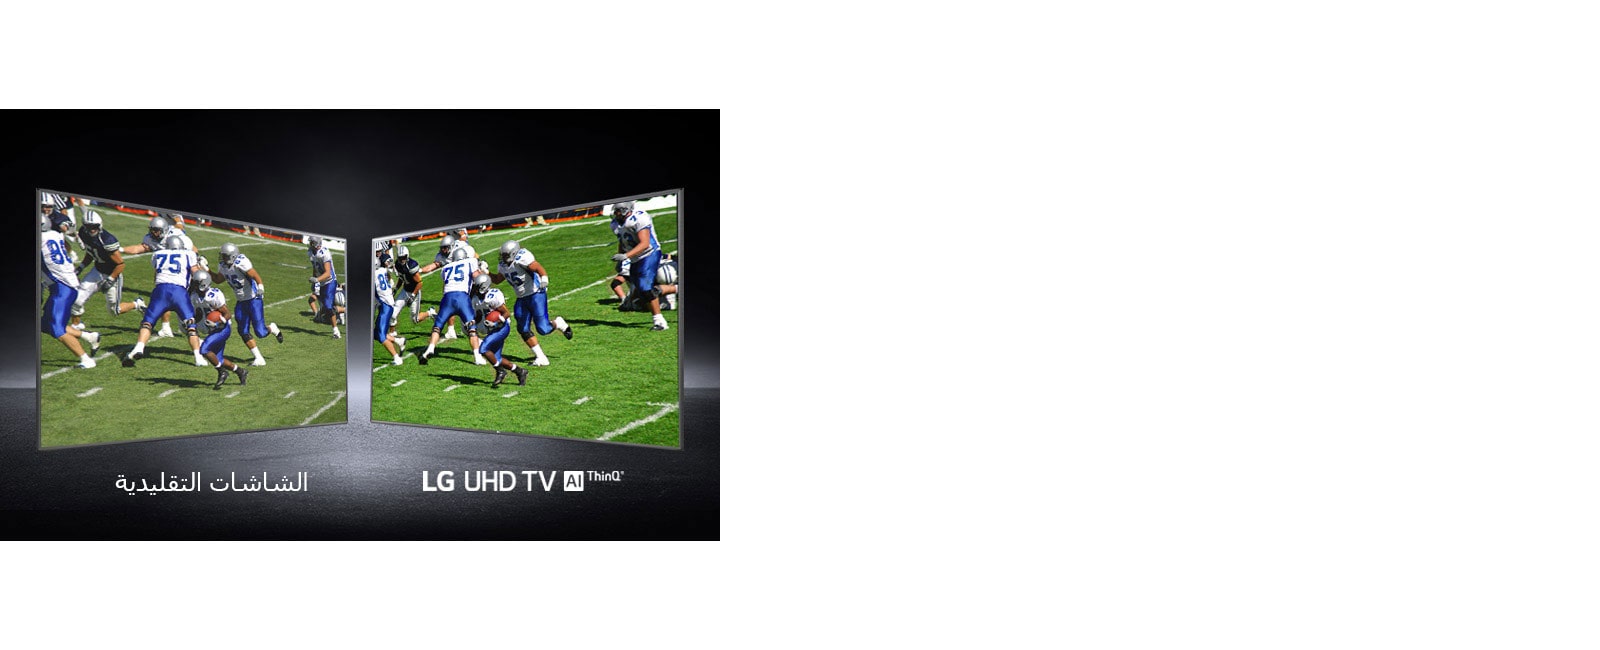 صورة للاعبين في أحد ملاعب كرة القدم. إحداها على شاشة تقليدية والأخرى على تلفزيون UHD.